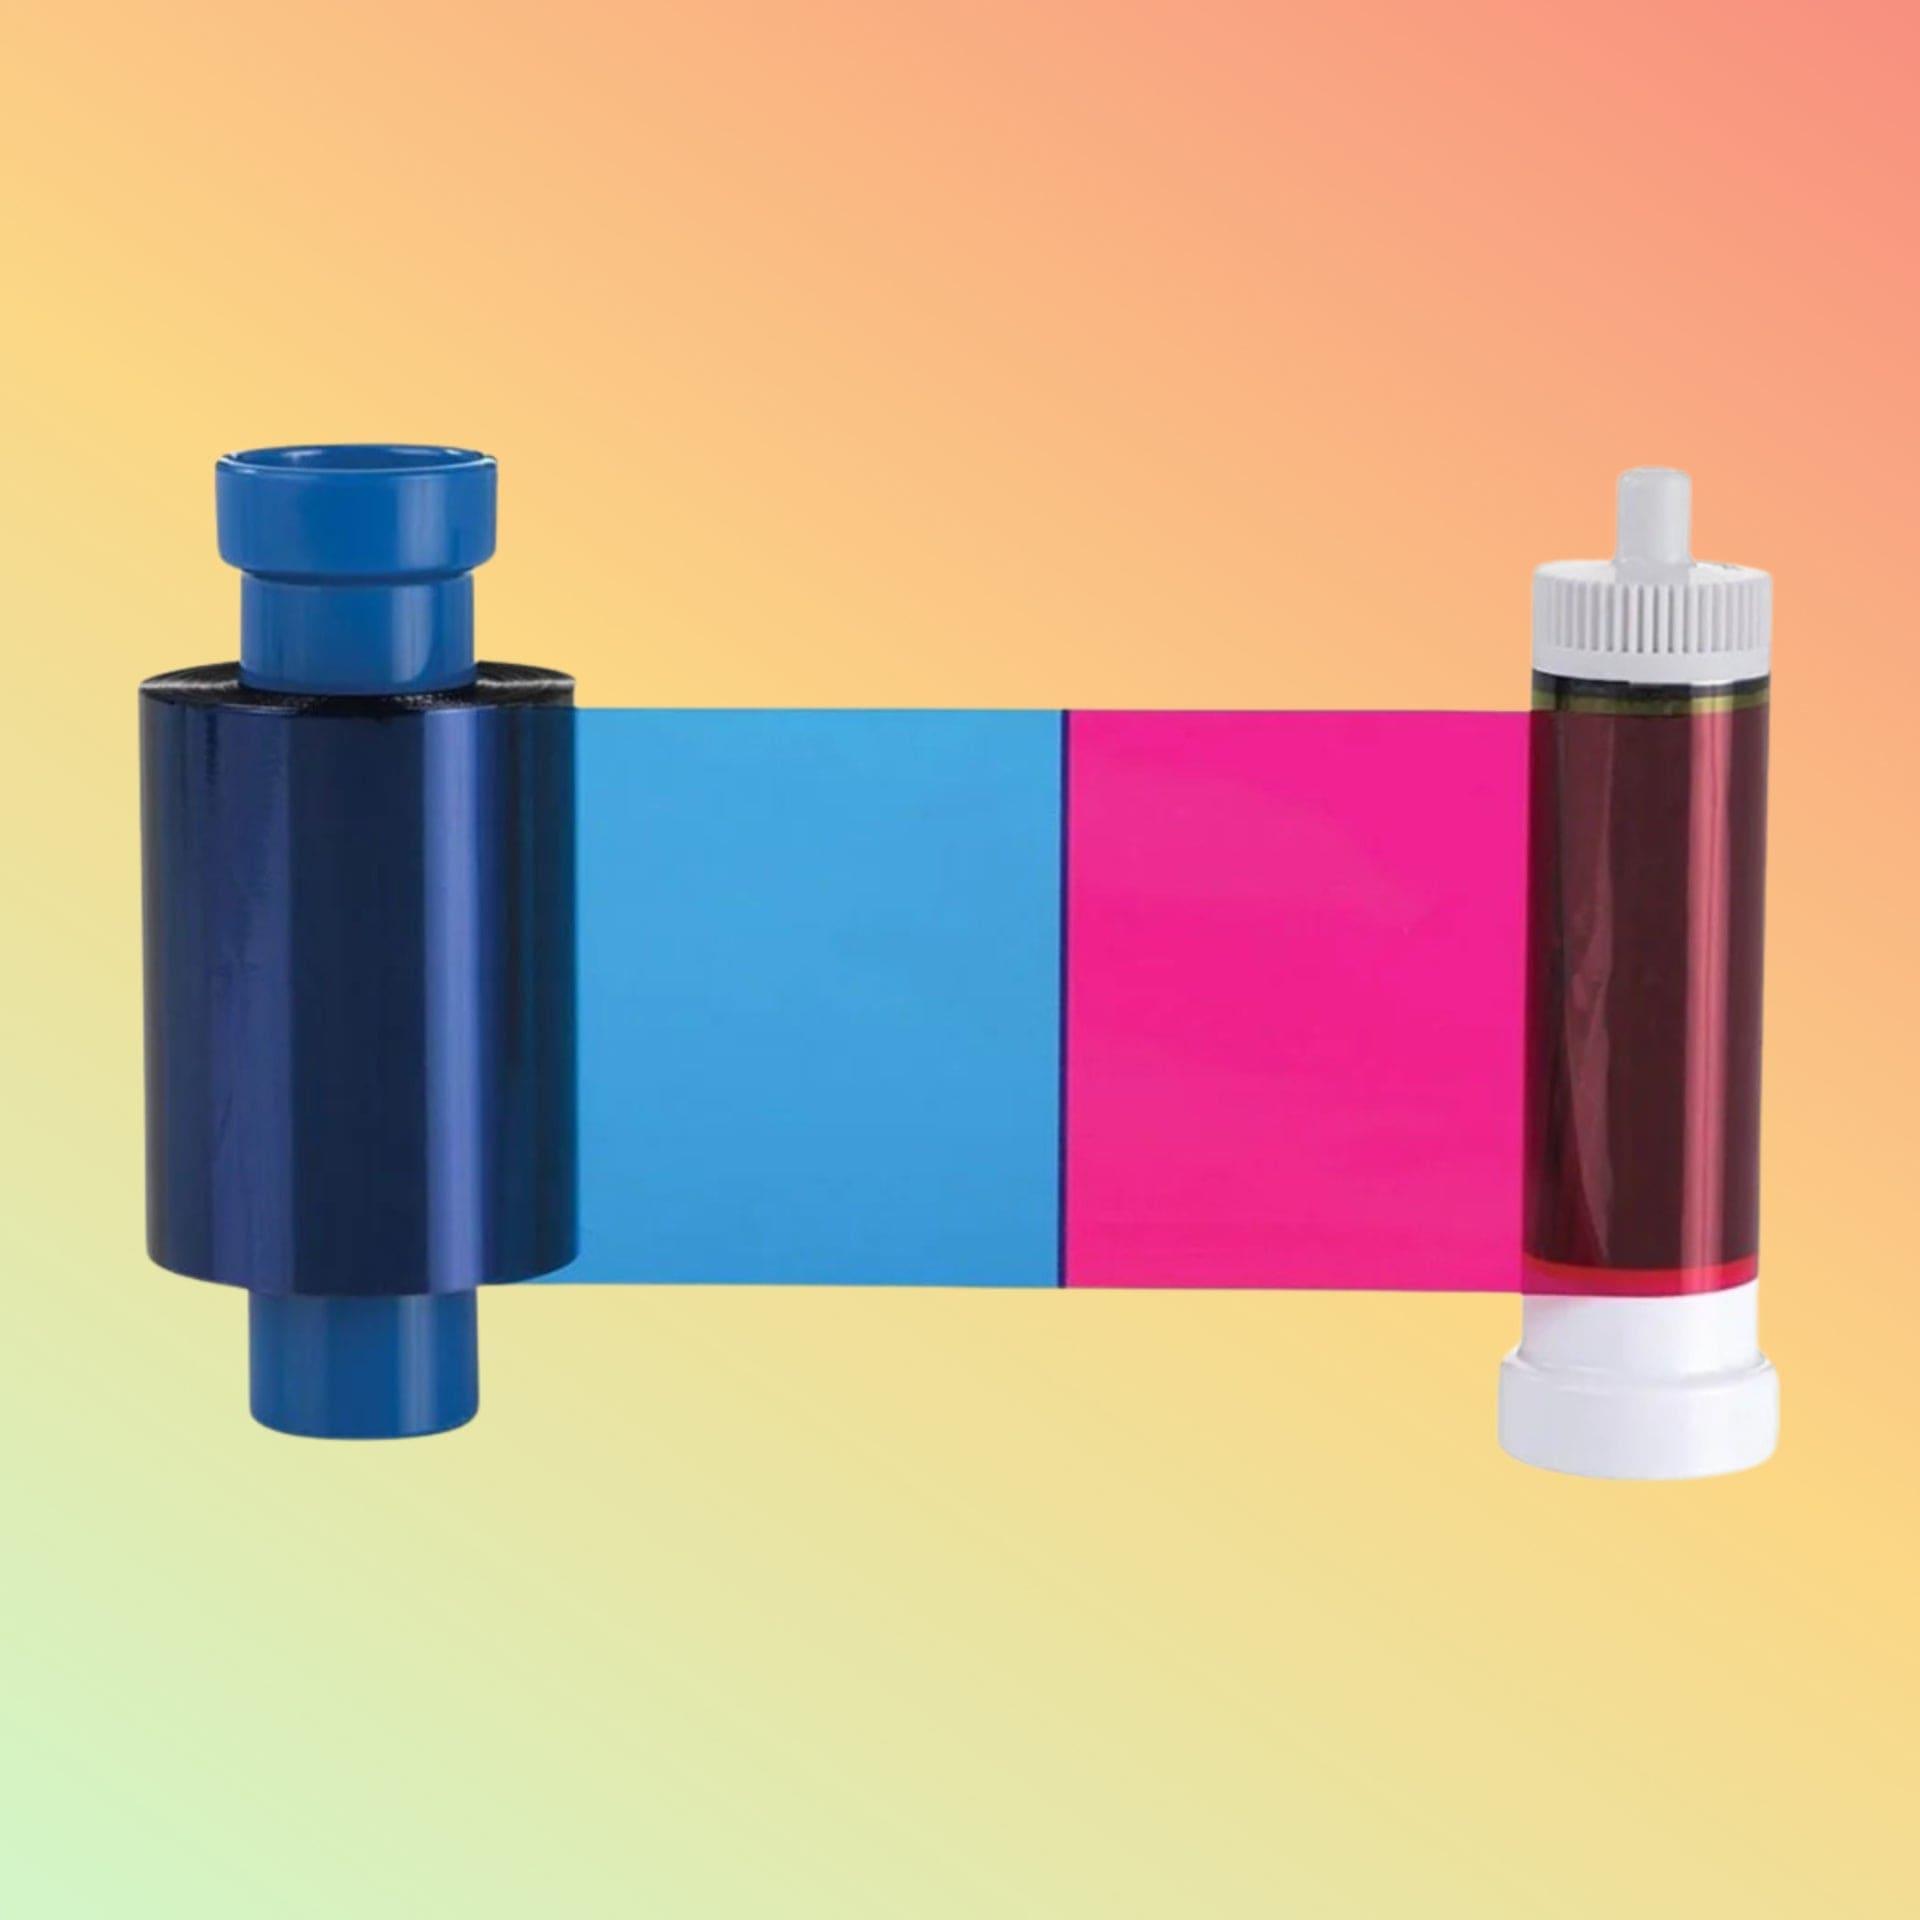 Ribbon Cartridge - Magicard Dye Film Type YMCKO LC1 - NEOTECH